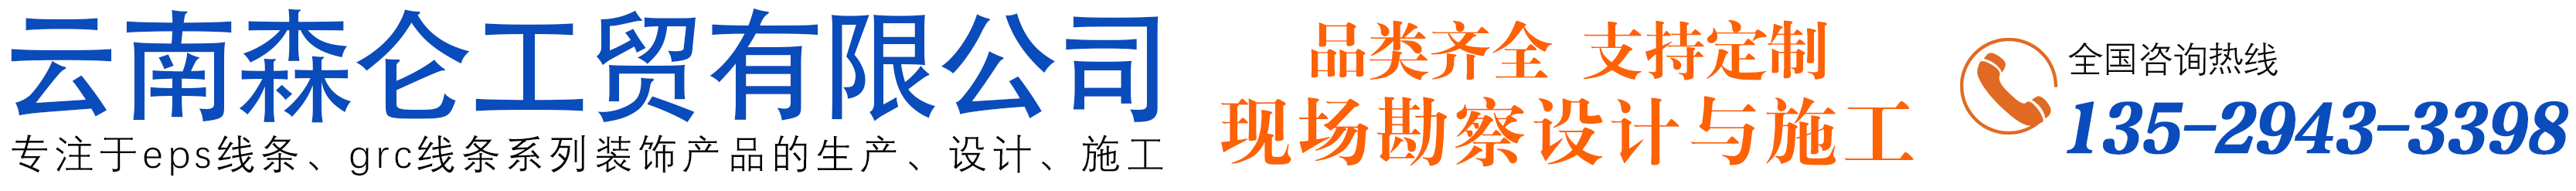 云南森仑工贸有限公司_Logo